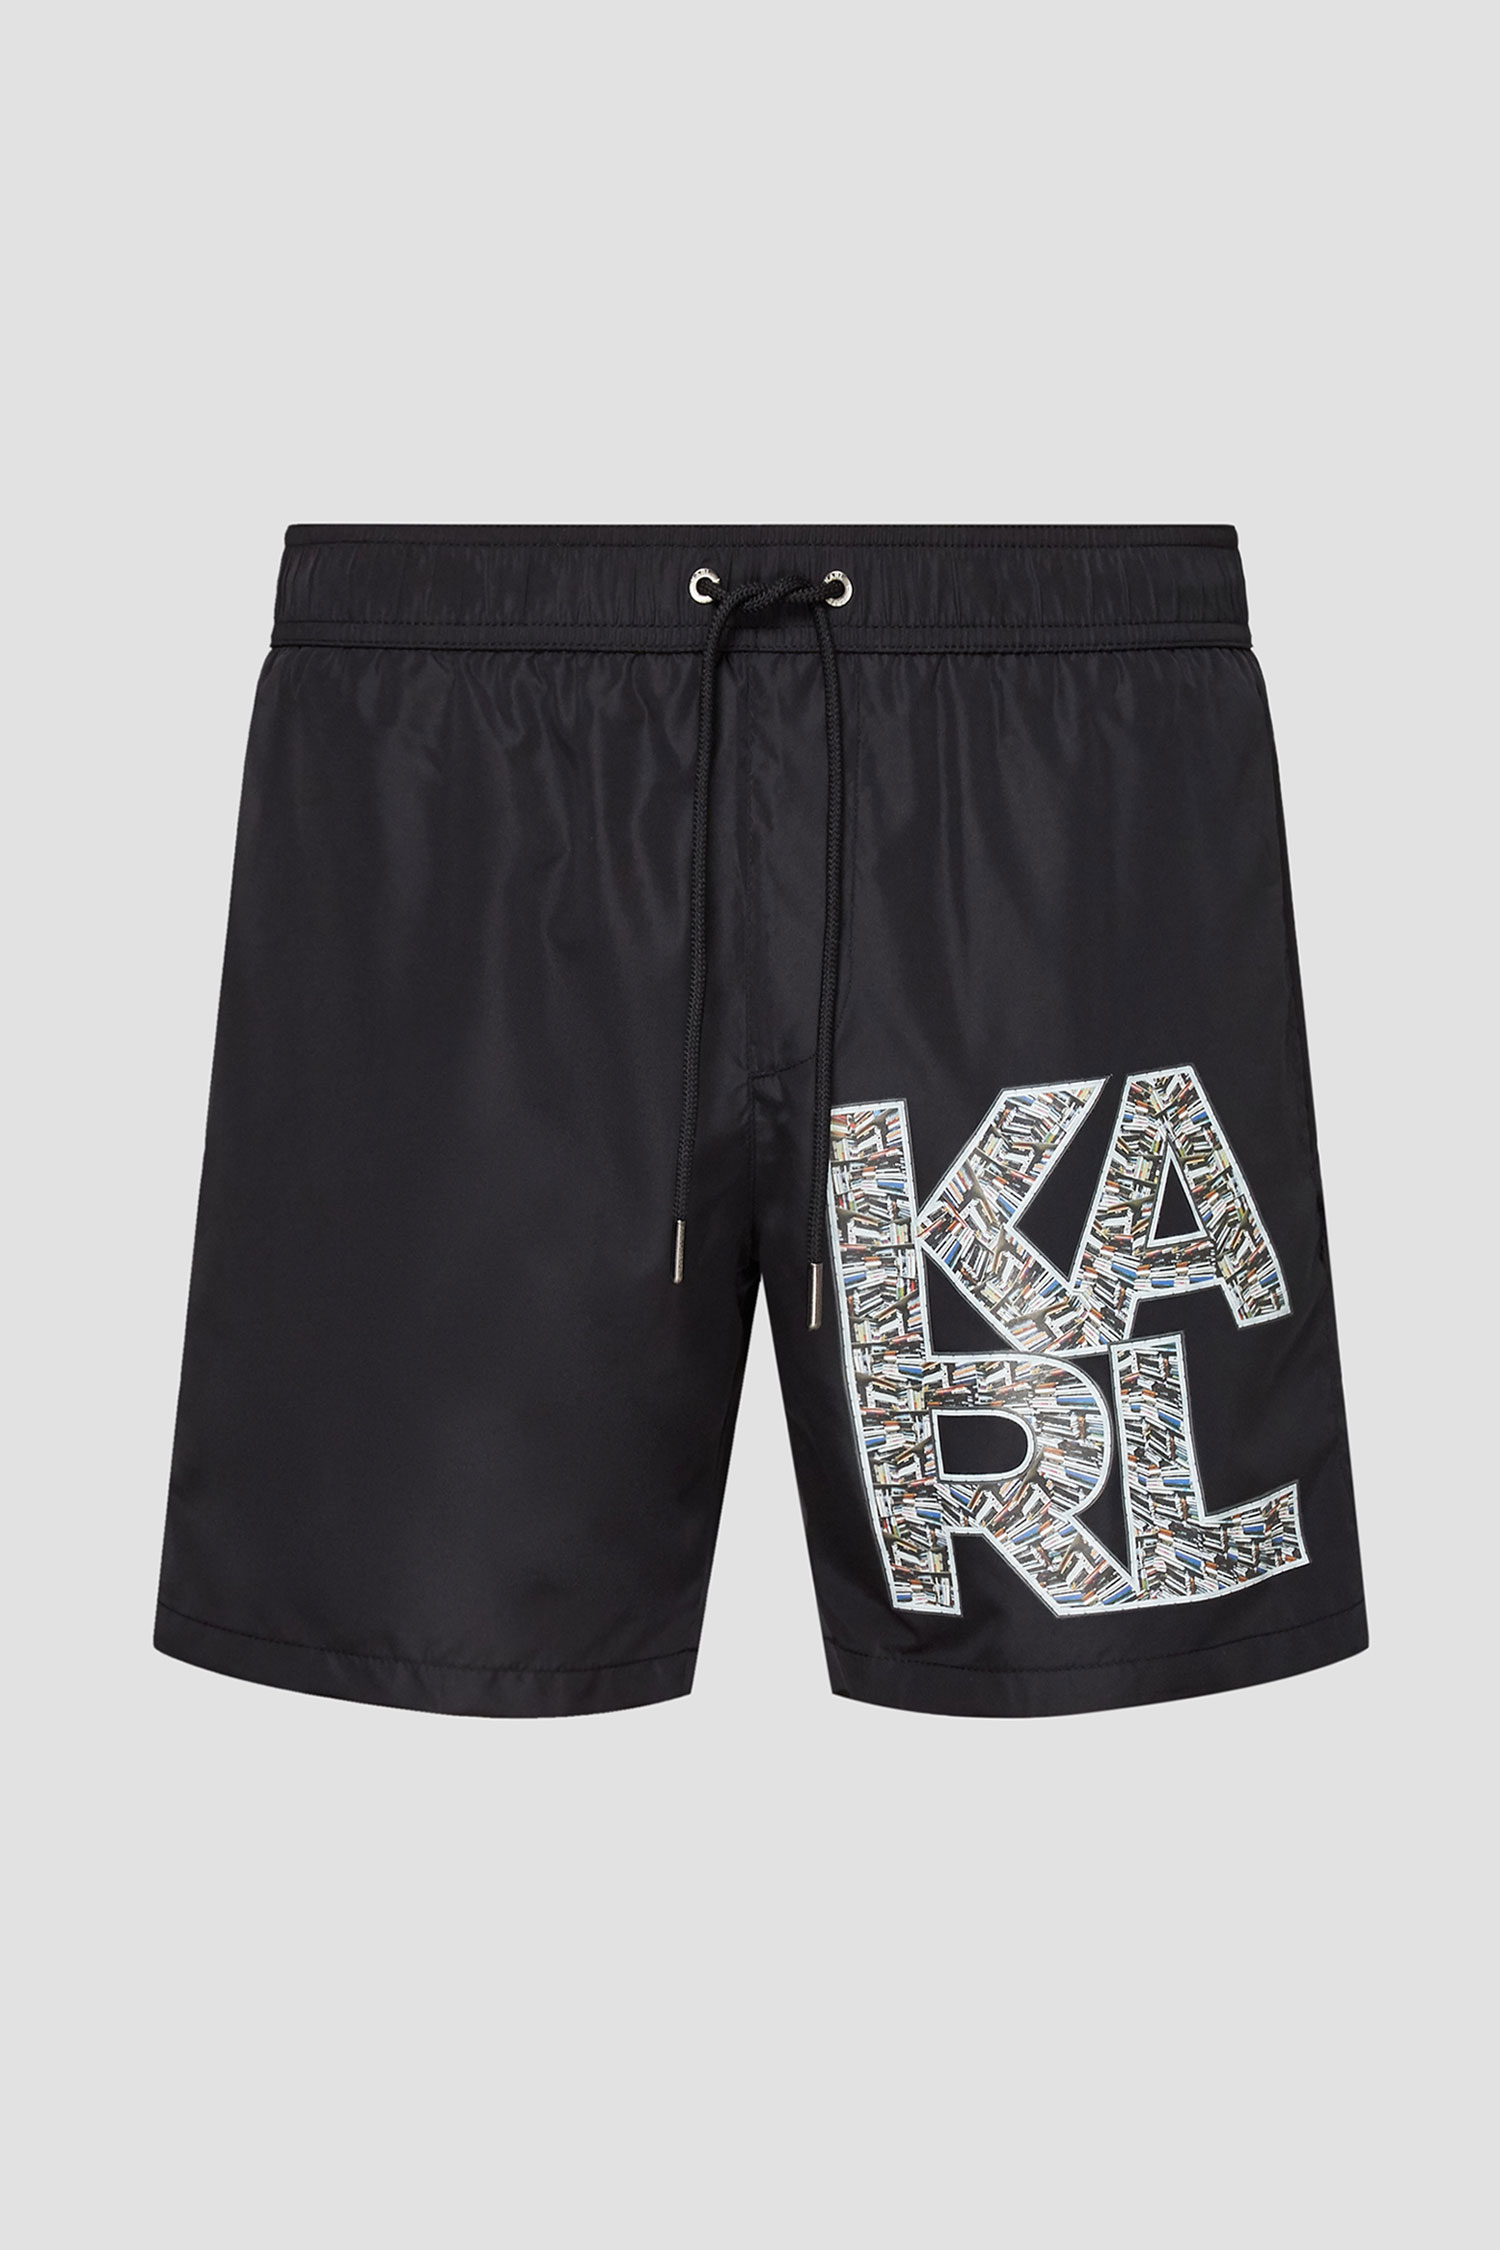 Черные плавательные шорты для парней Karl Lagerfeld KL21MBM02;ONE COLOUR